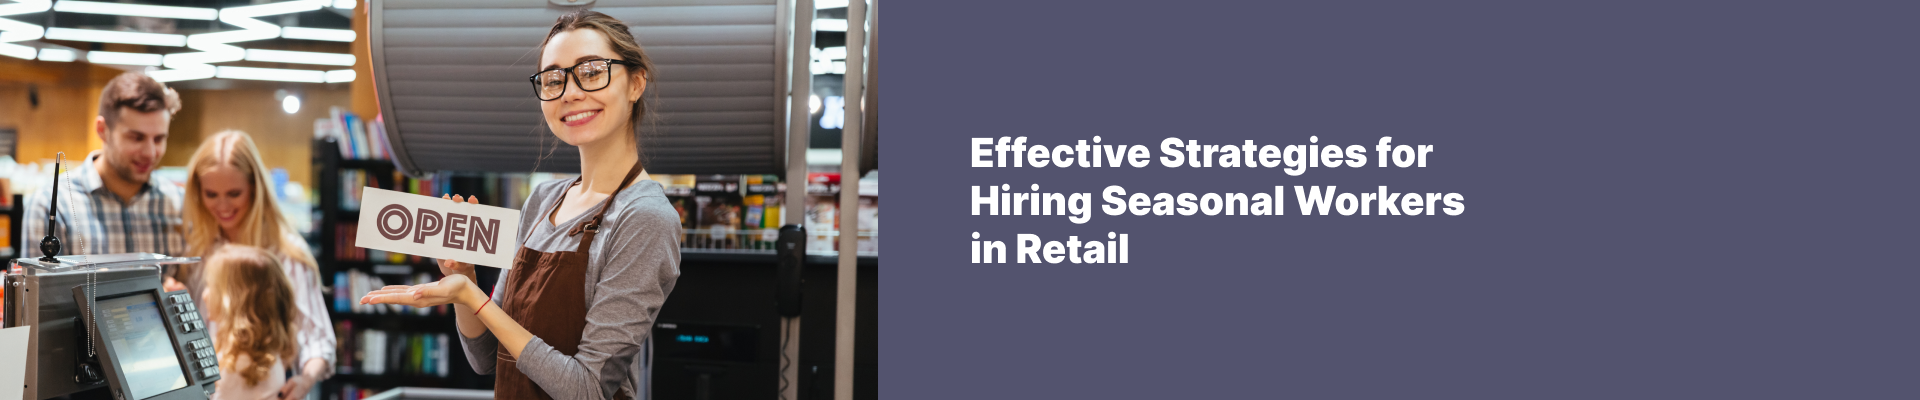 Effective Strategies for Hiring Seasonal Workers in Retail